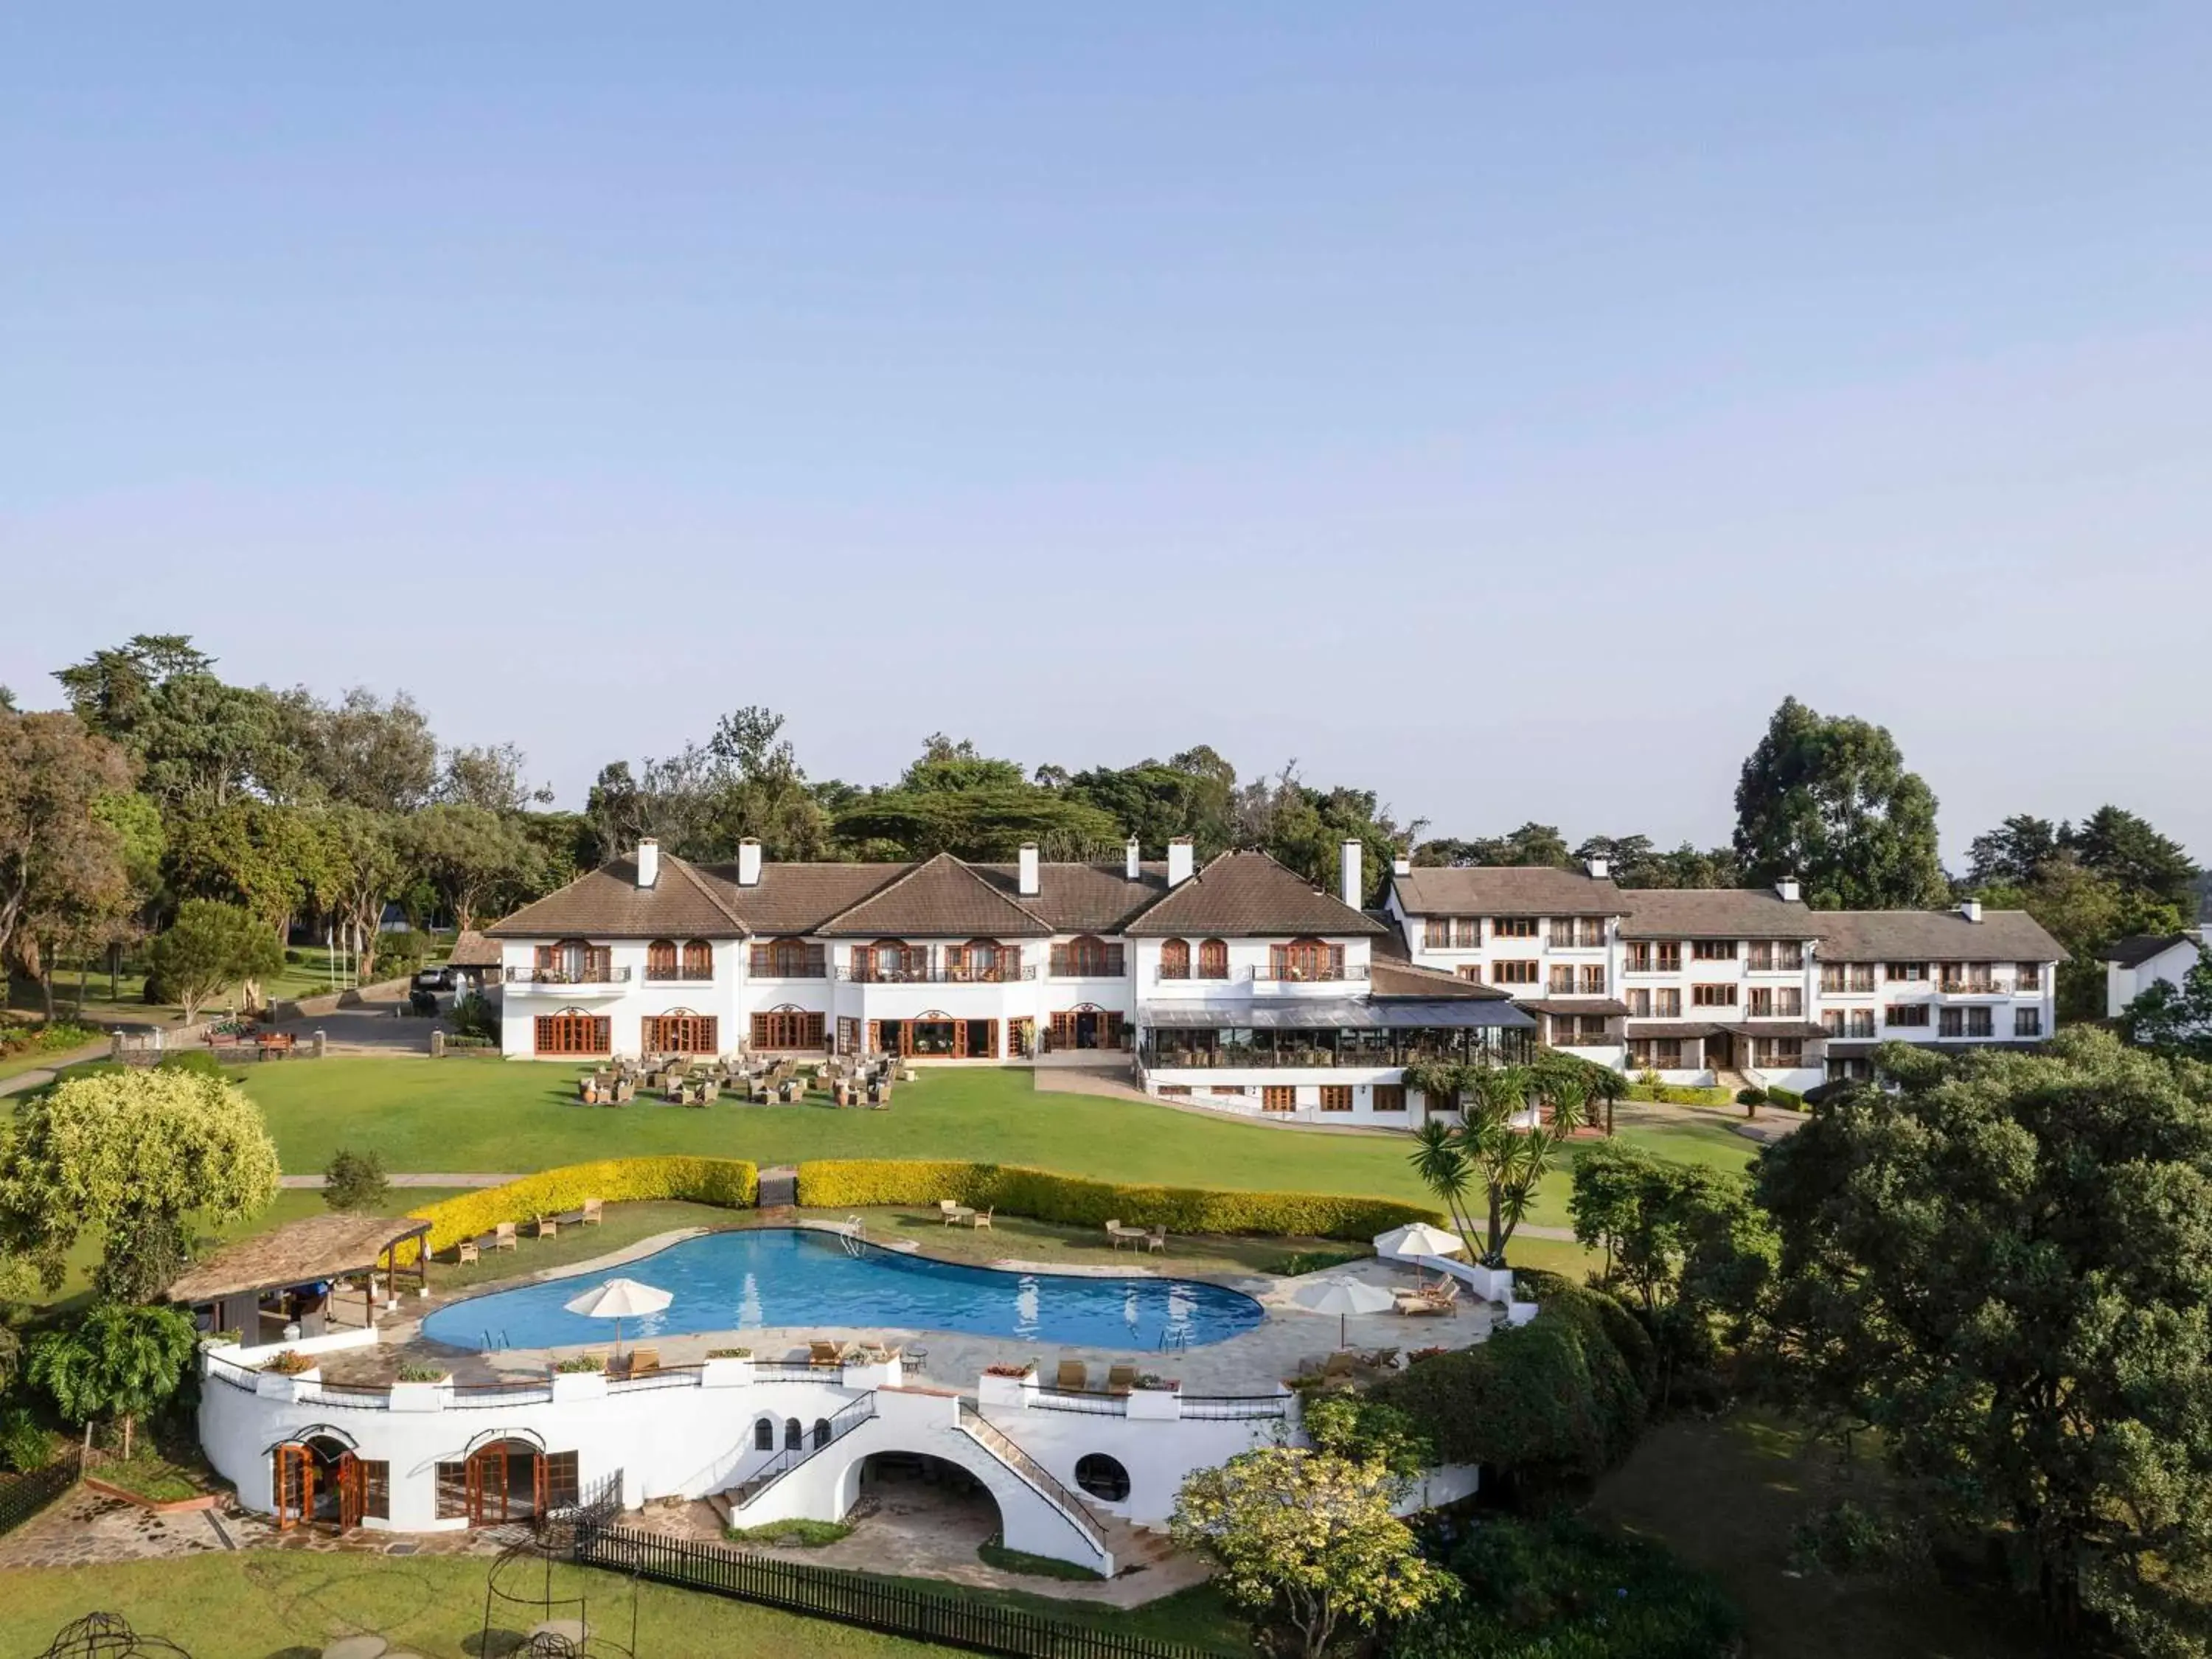 Property building, Pool View in Fairmont Mount Kenya Safari Club